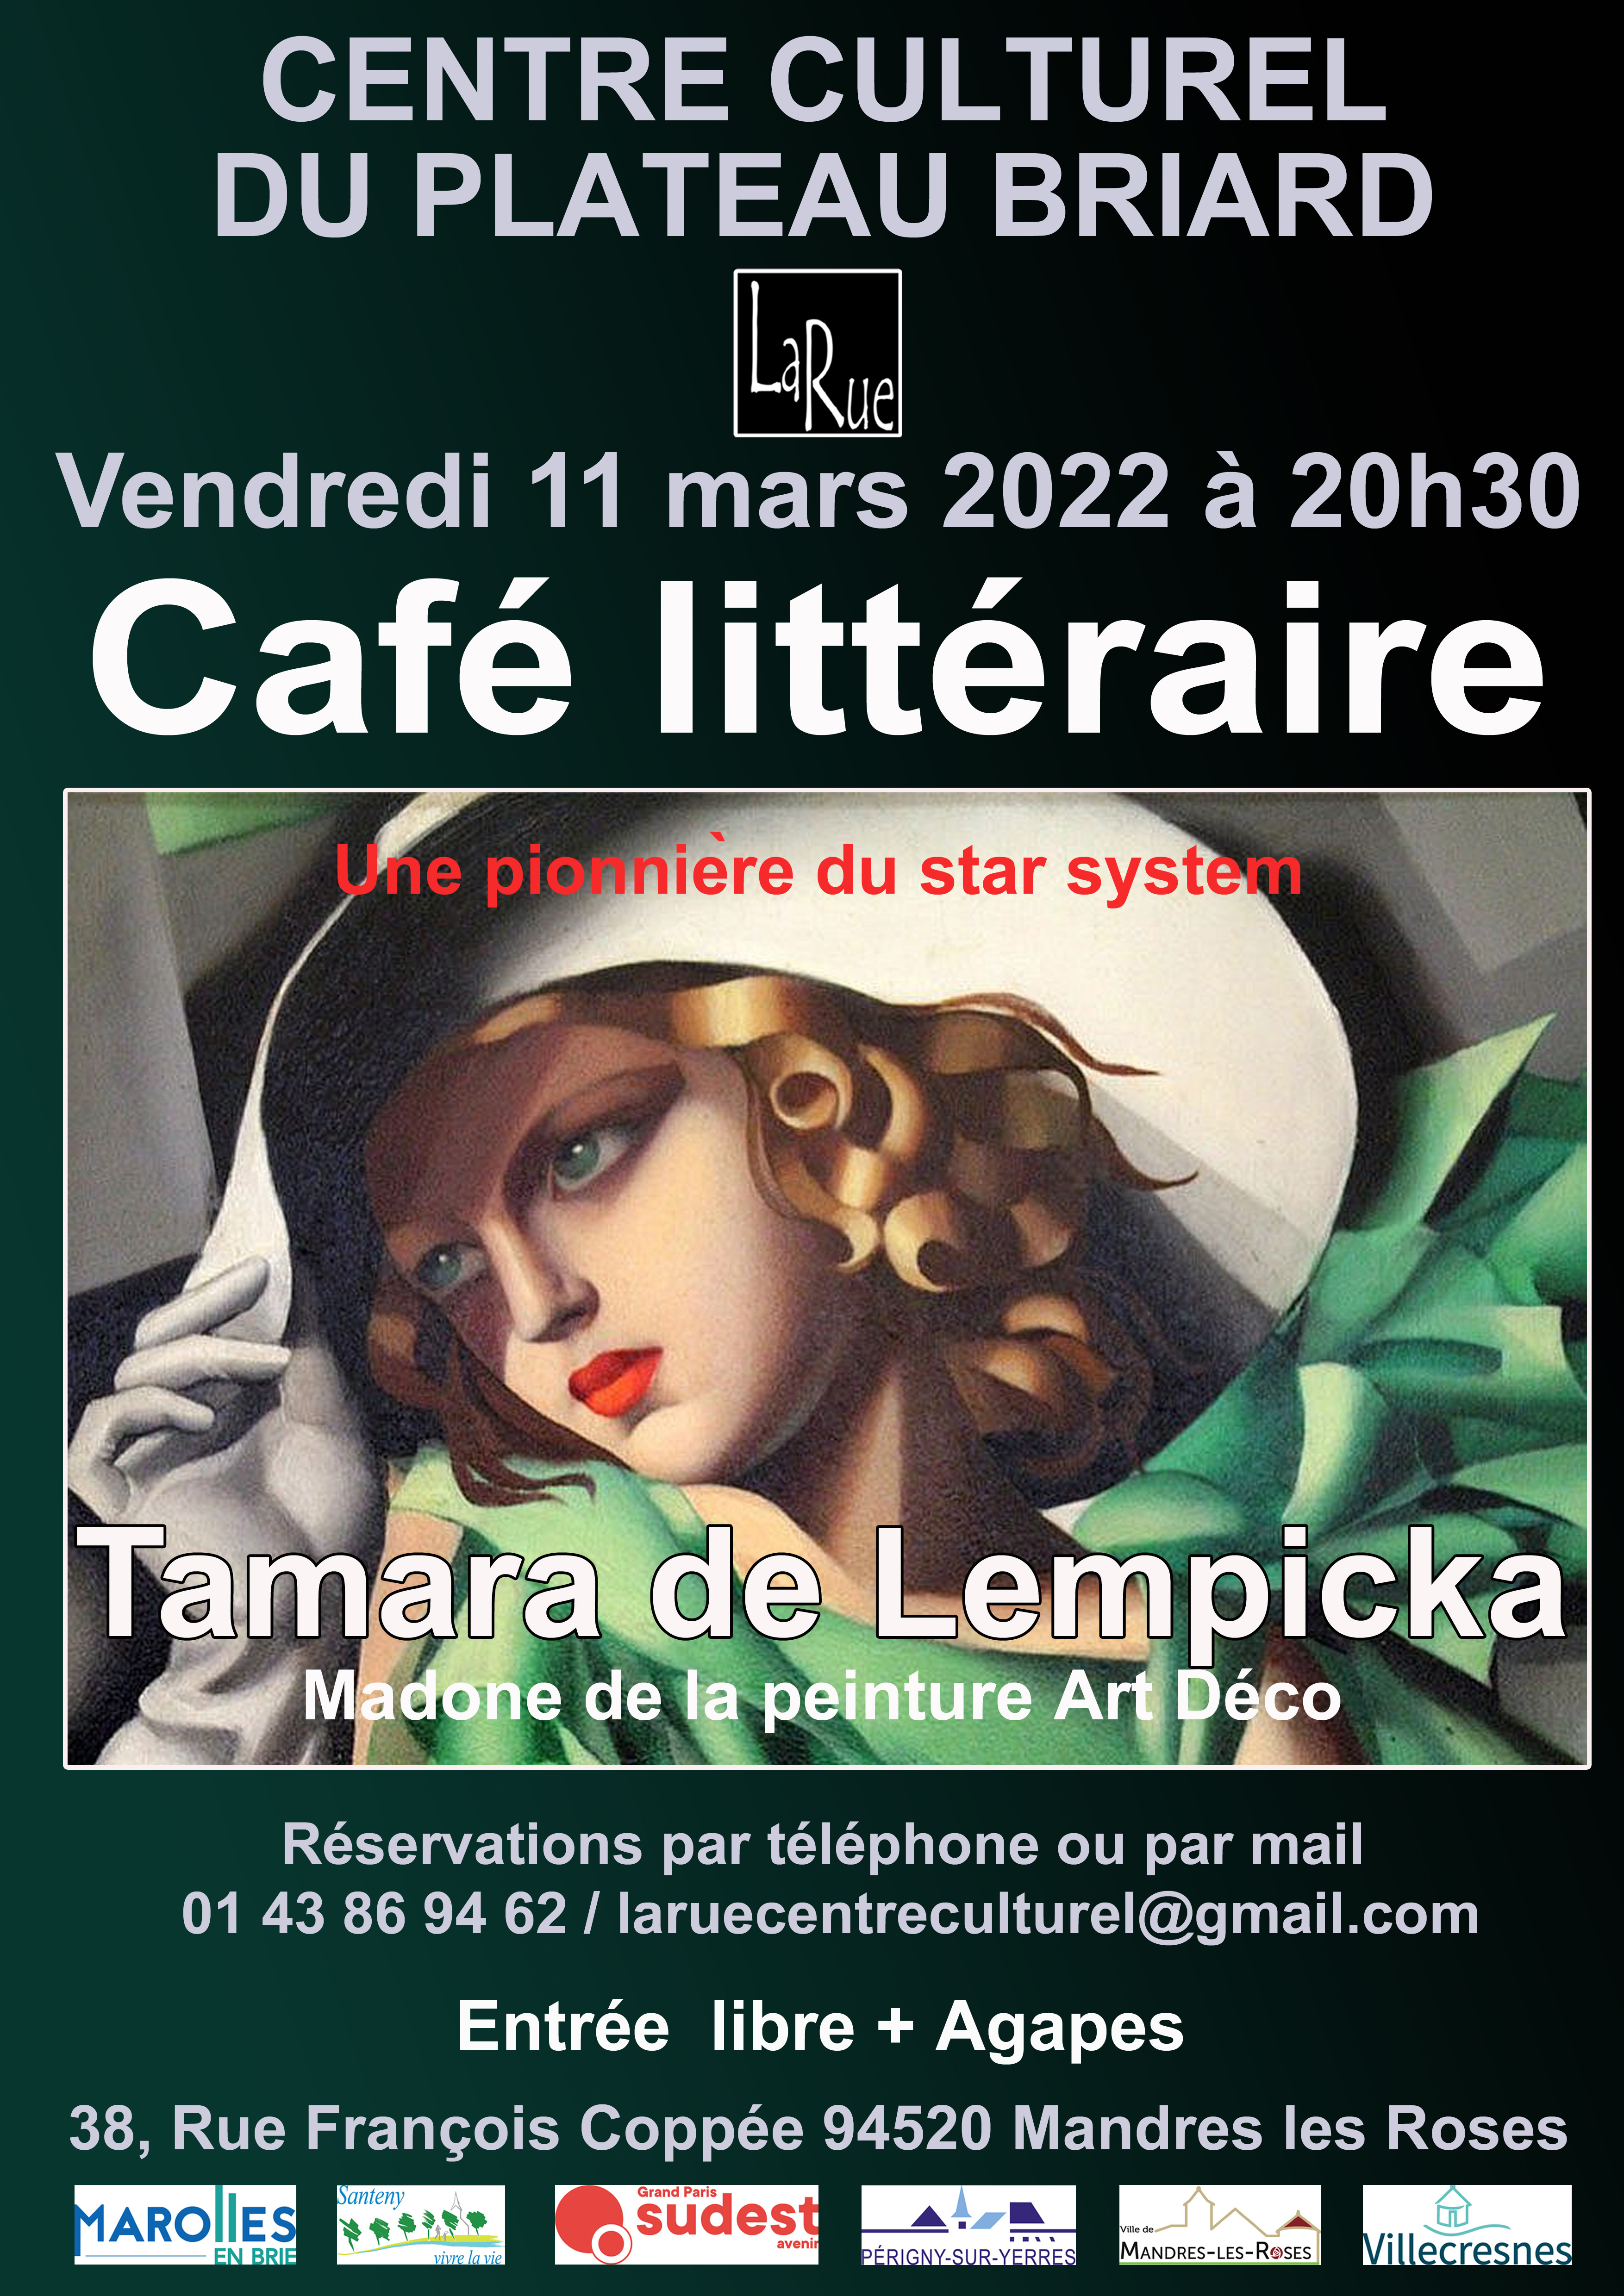 Le dernier Café littéraire présenté par Alain... Incroyable Tamara ! 